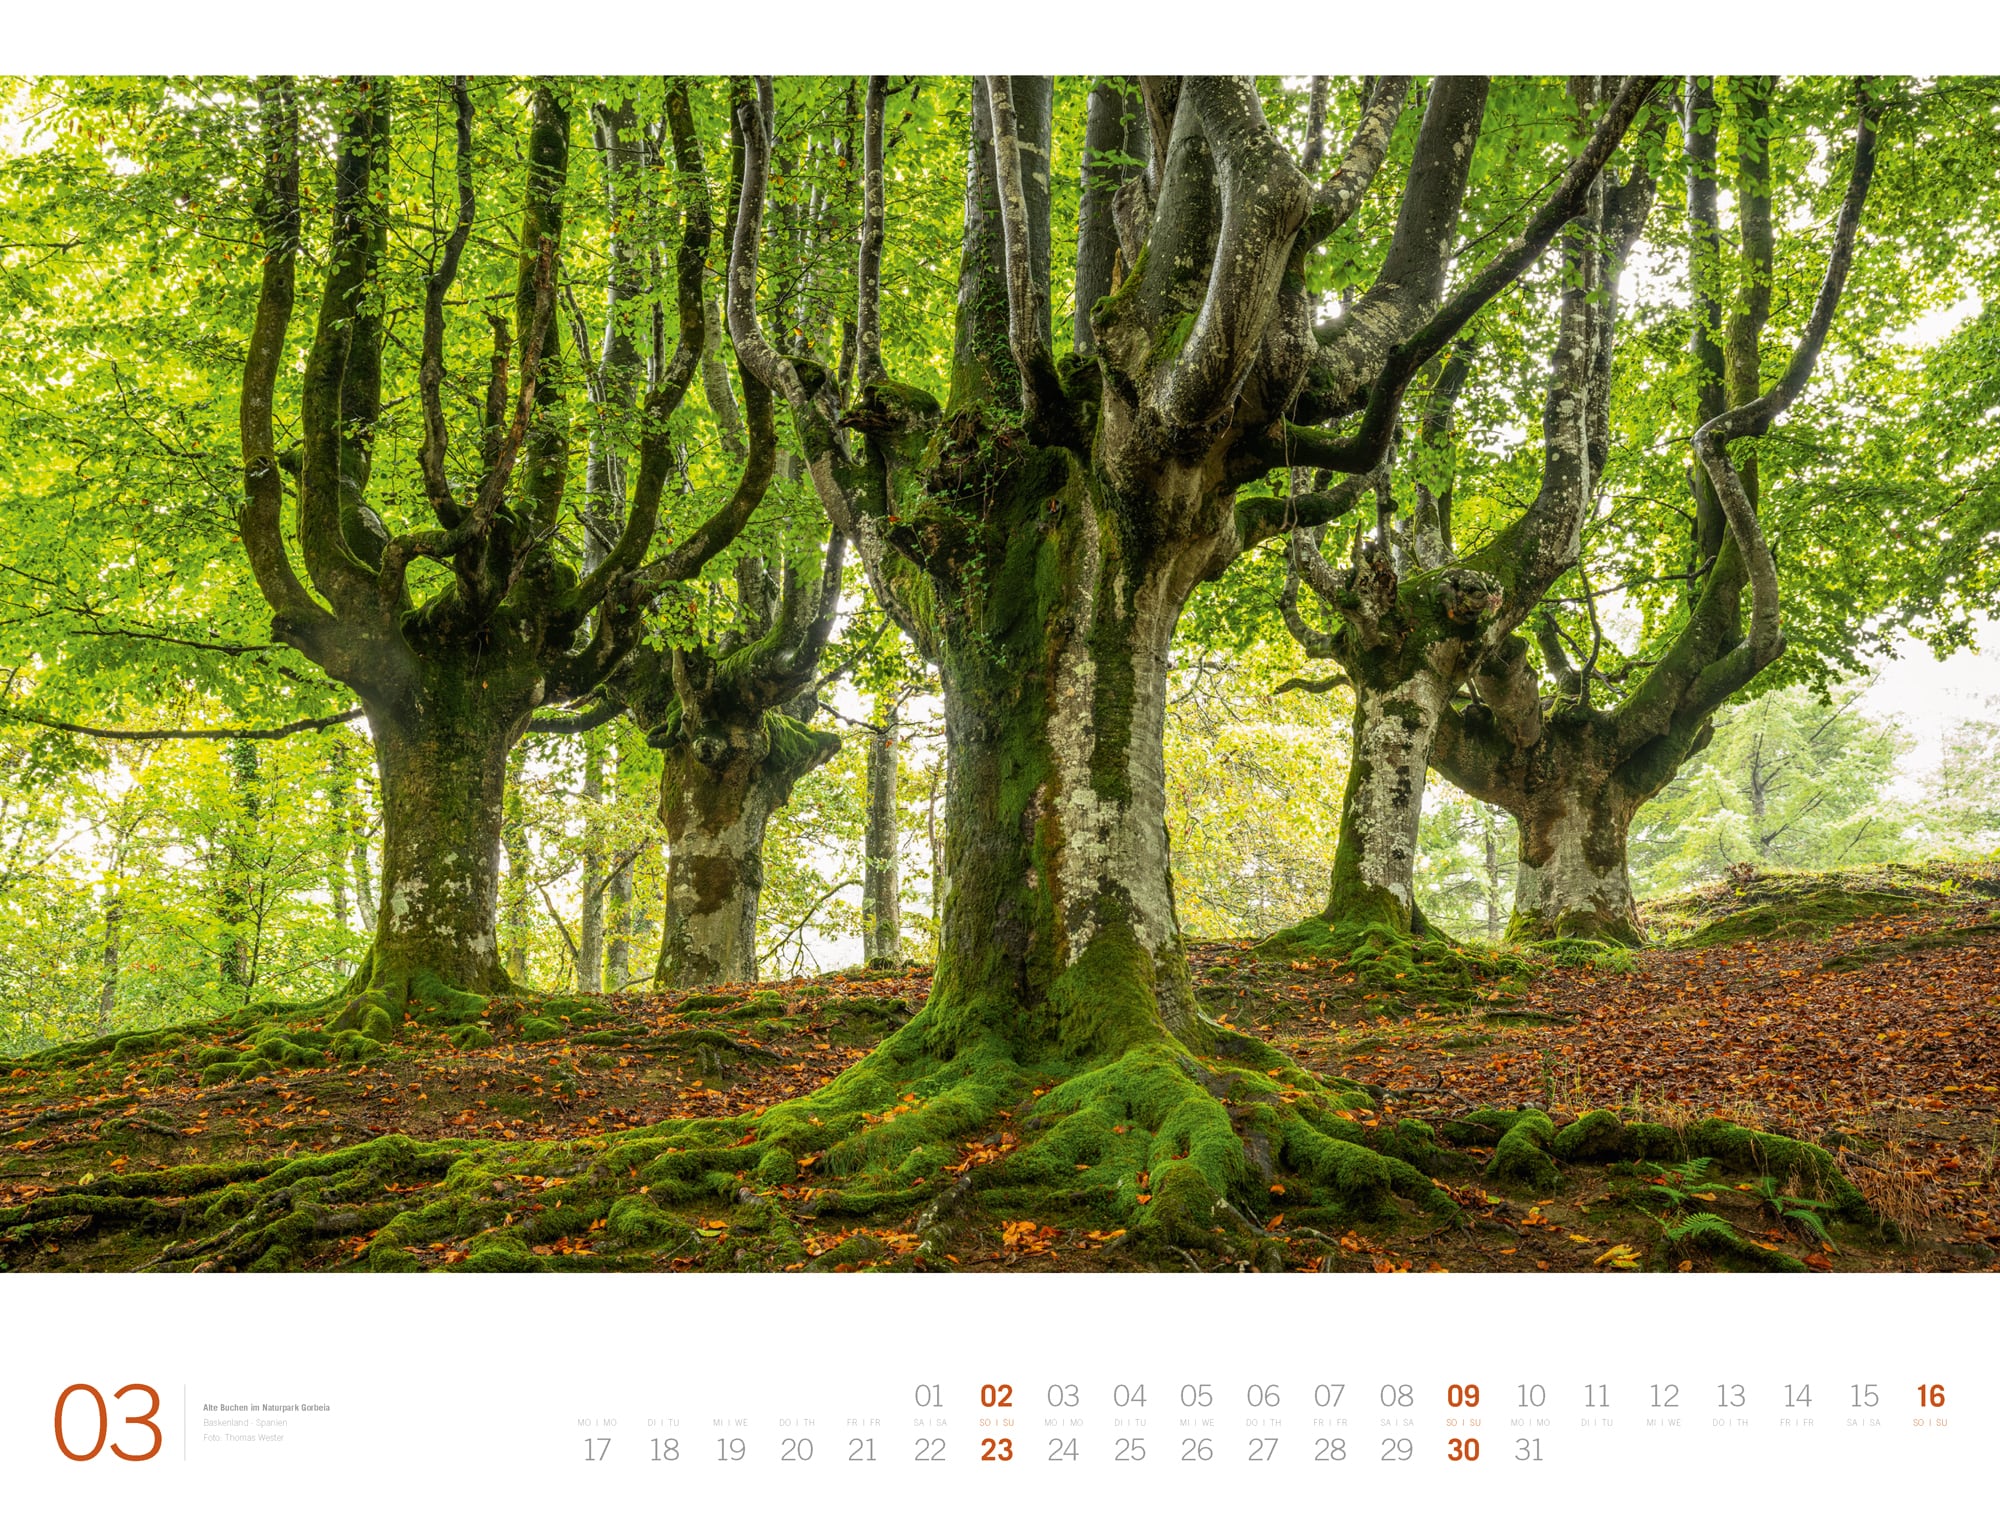 Ackermann Calendar Forest - Gallery 2025 - Inside View 03